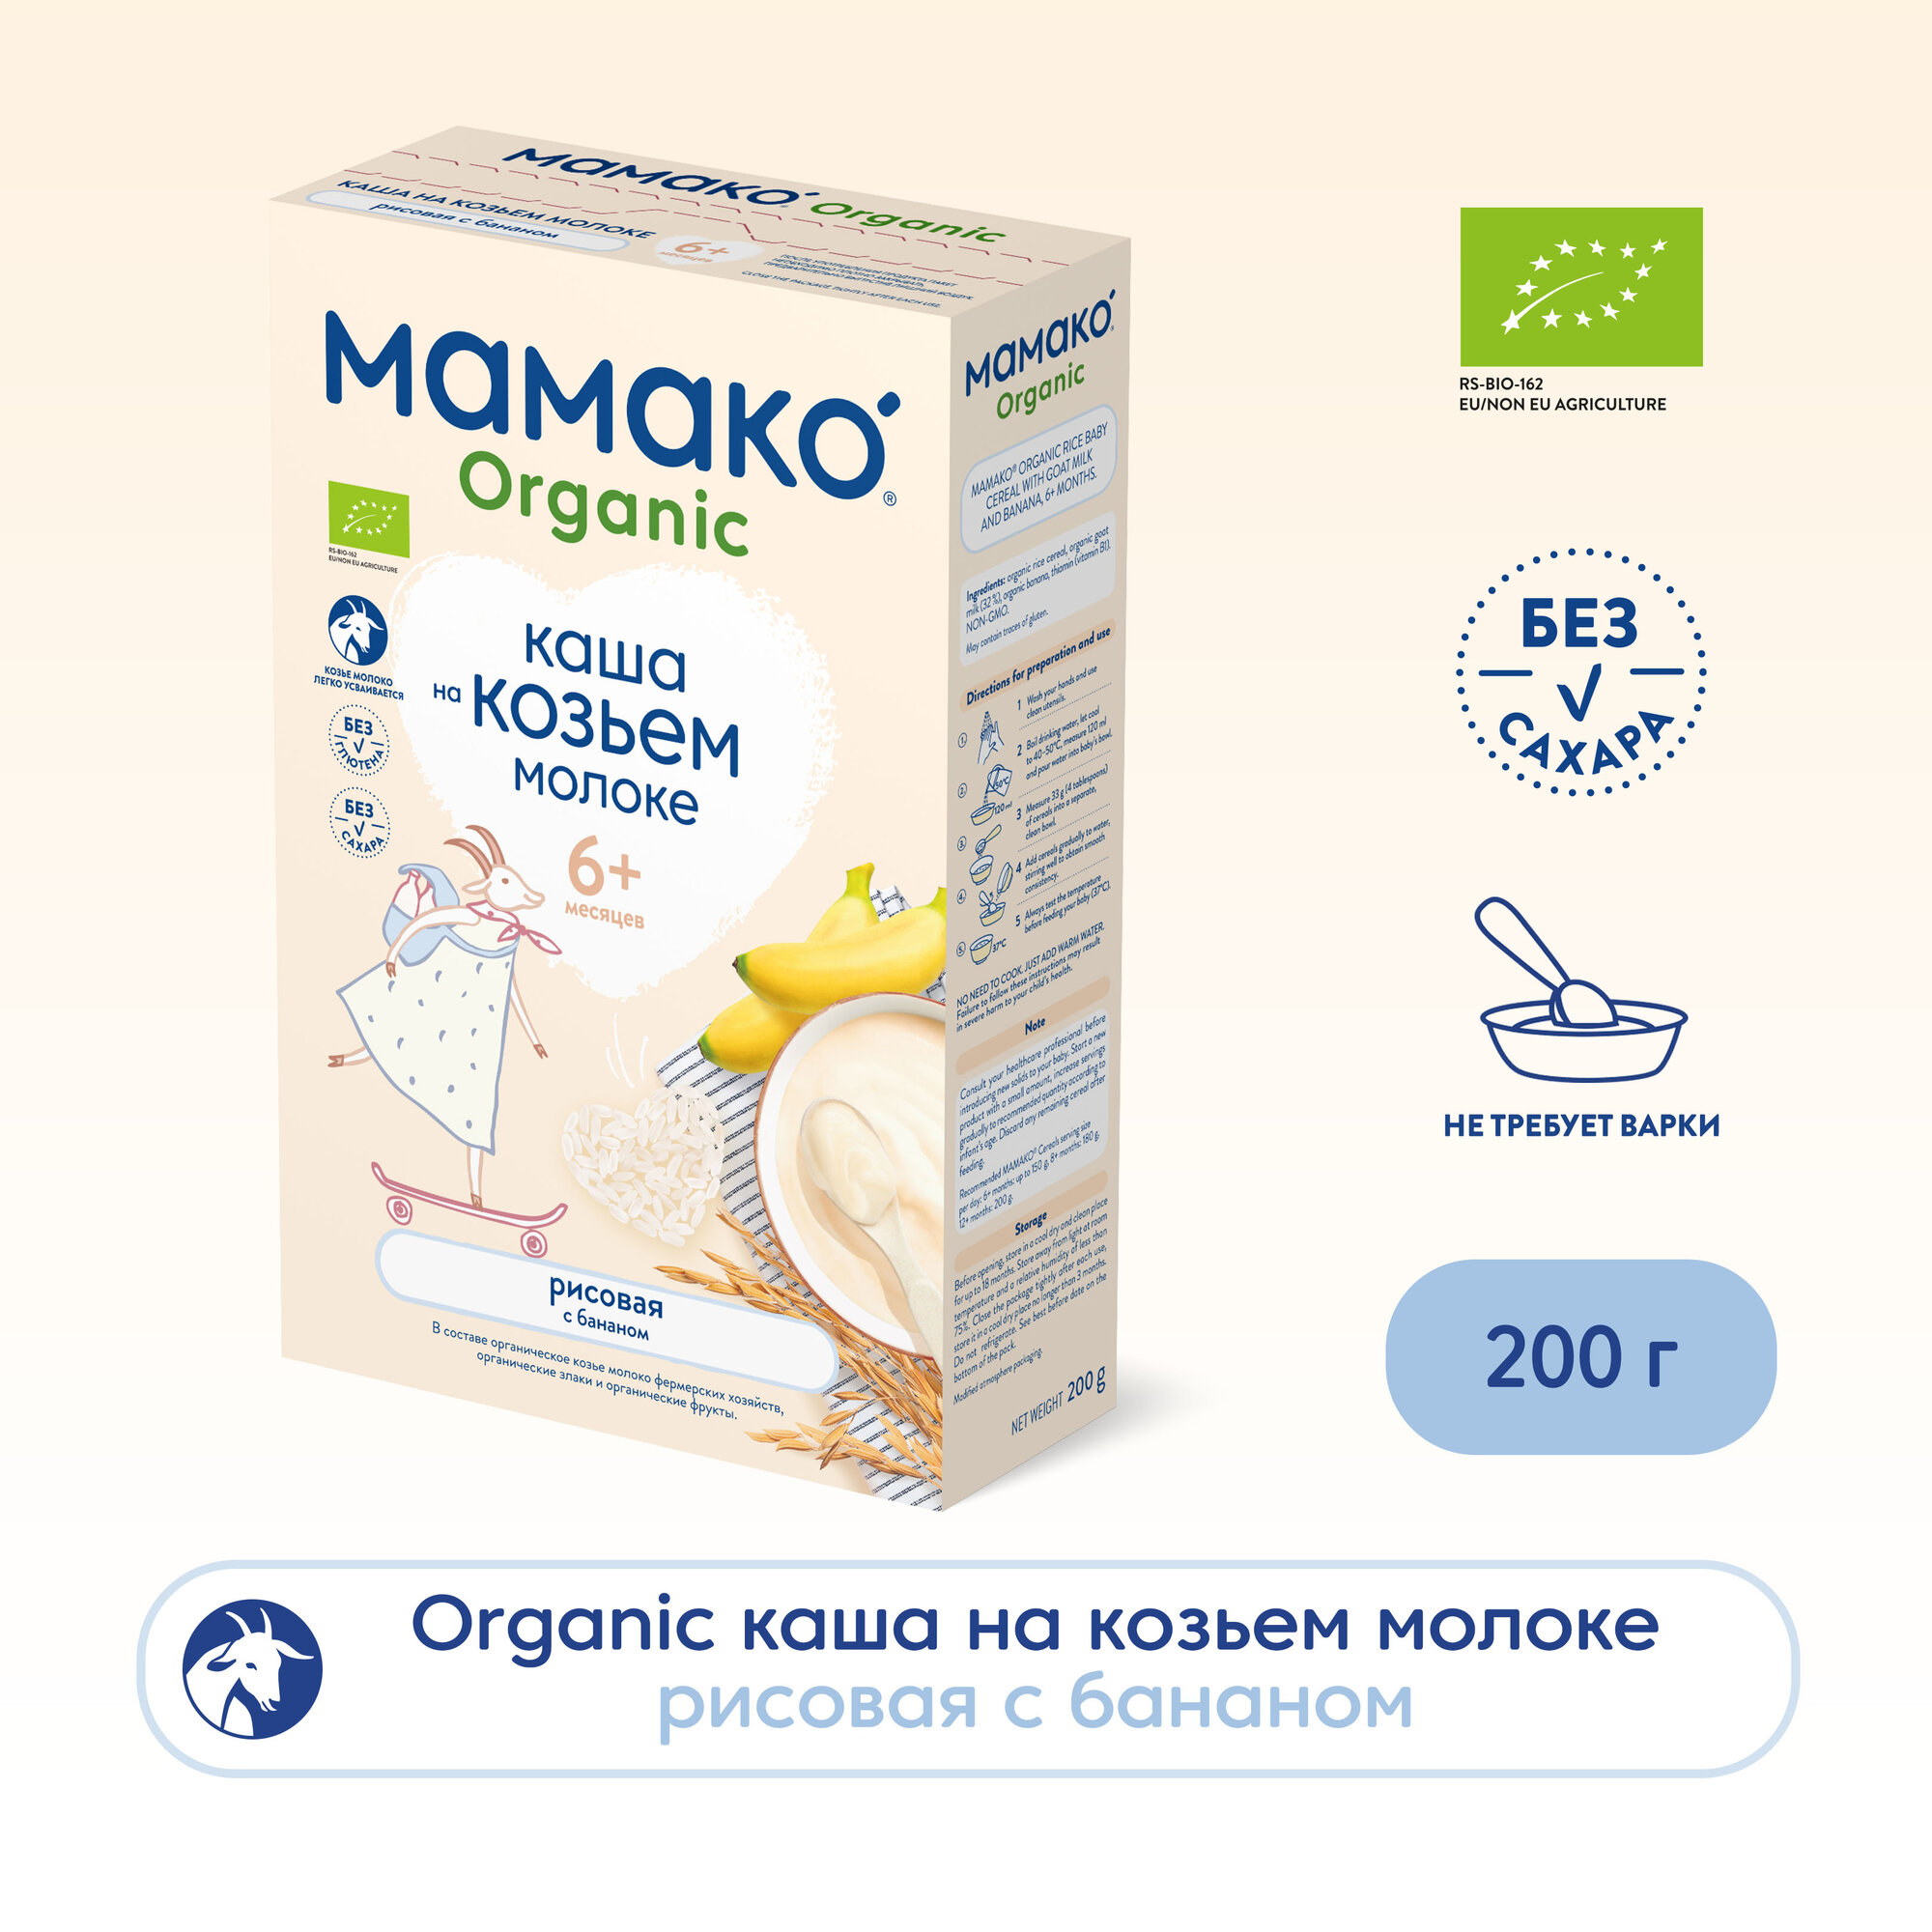 Каша Мамако рисовая с бананом на козьем молоке органическая 200г - фото №3